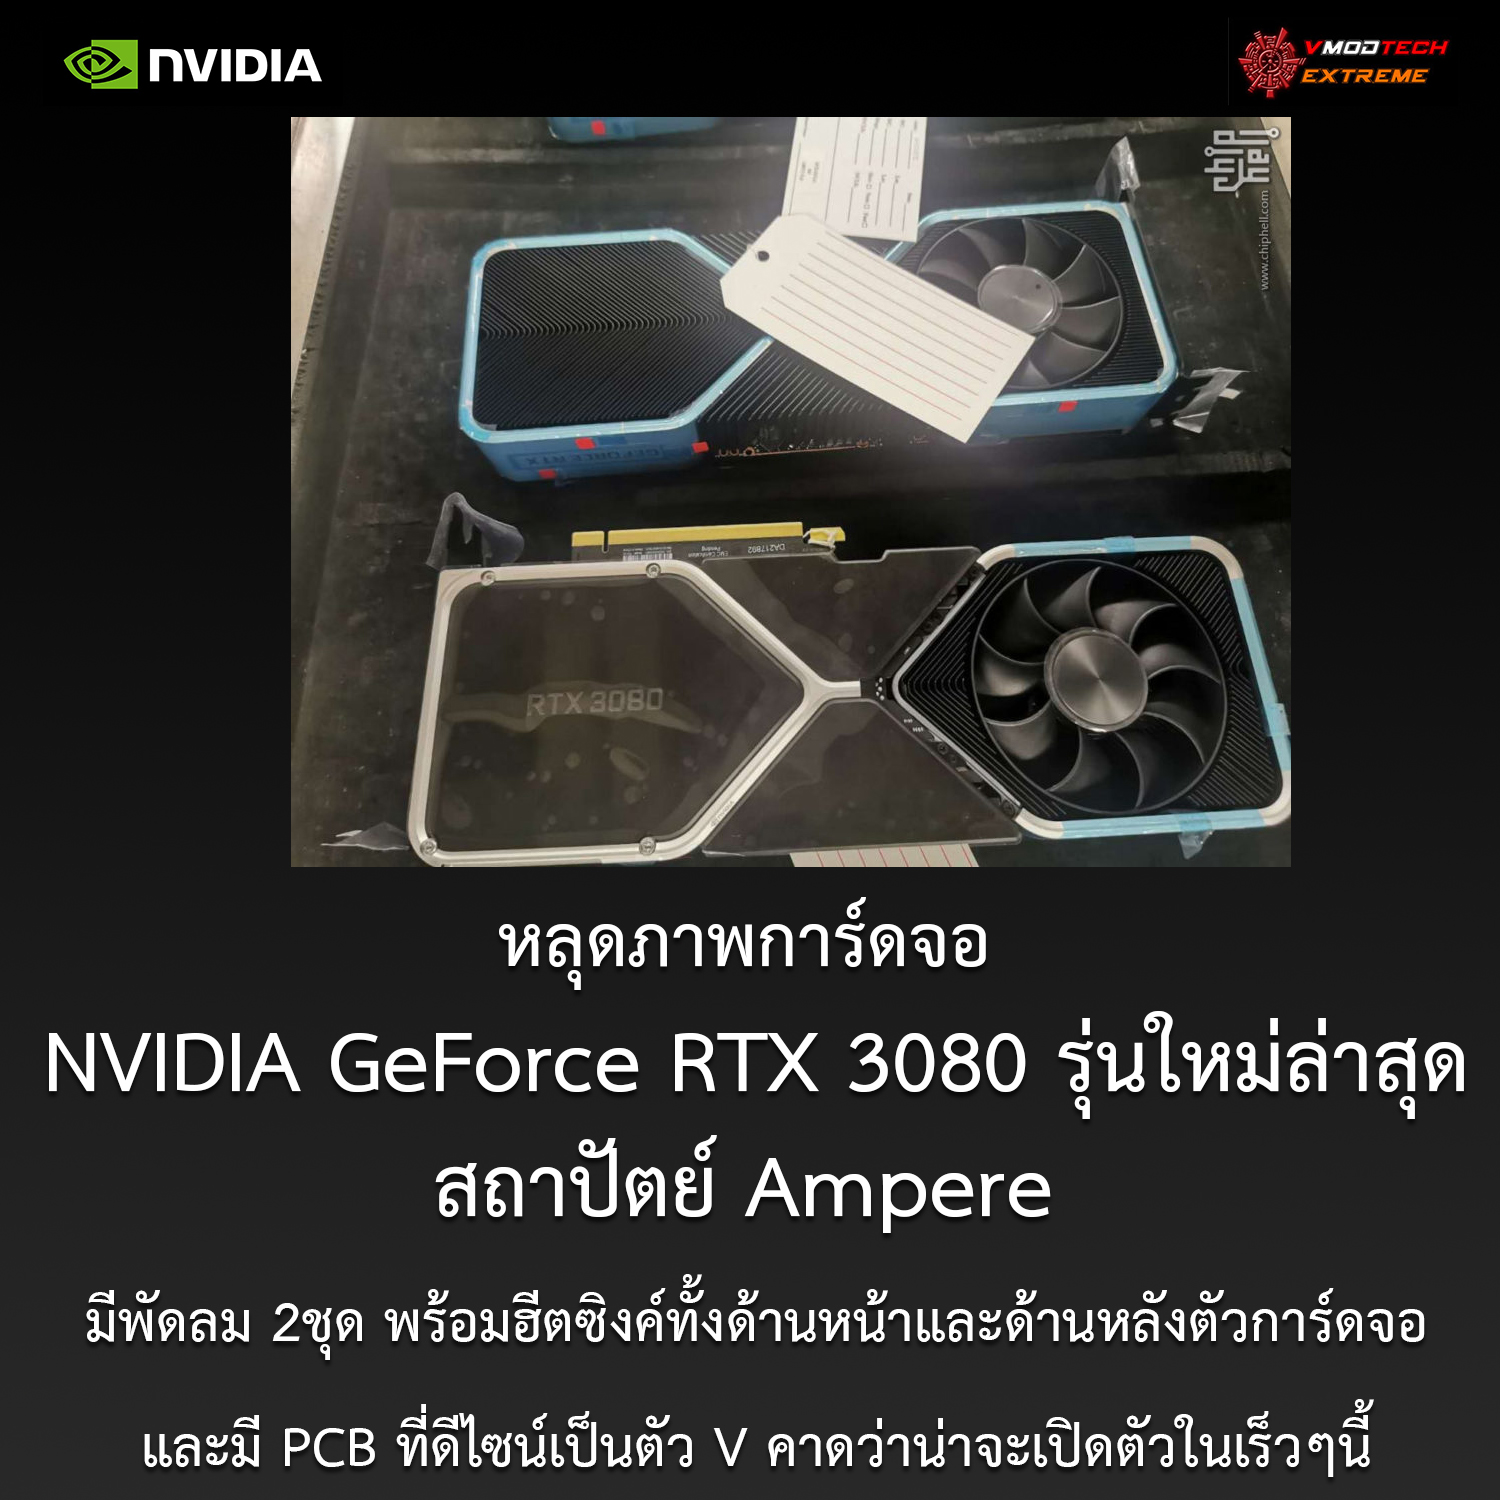 หลุดภาพที่คาดว่าเป็นการ์ดจอ NVIDIA GeForce RTX 3080 รุ่นใหม่ล่าสุดที่ยังไม่เปิดตัวอย่างเป็นทางการ 